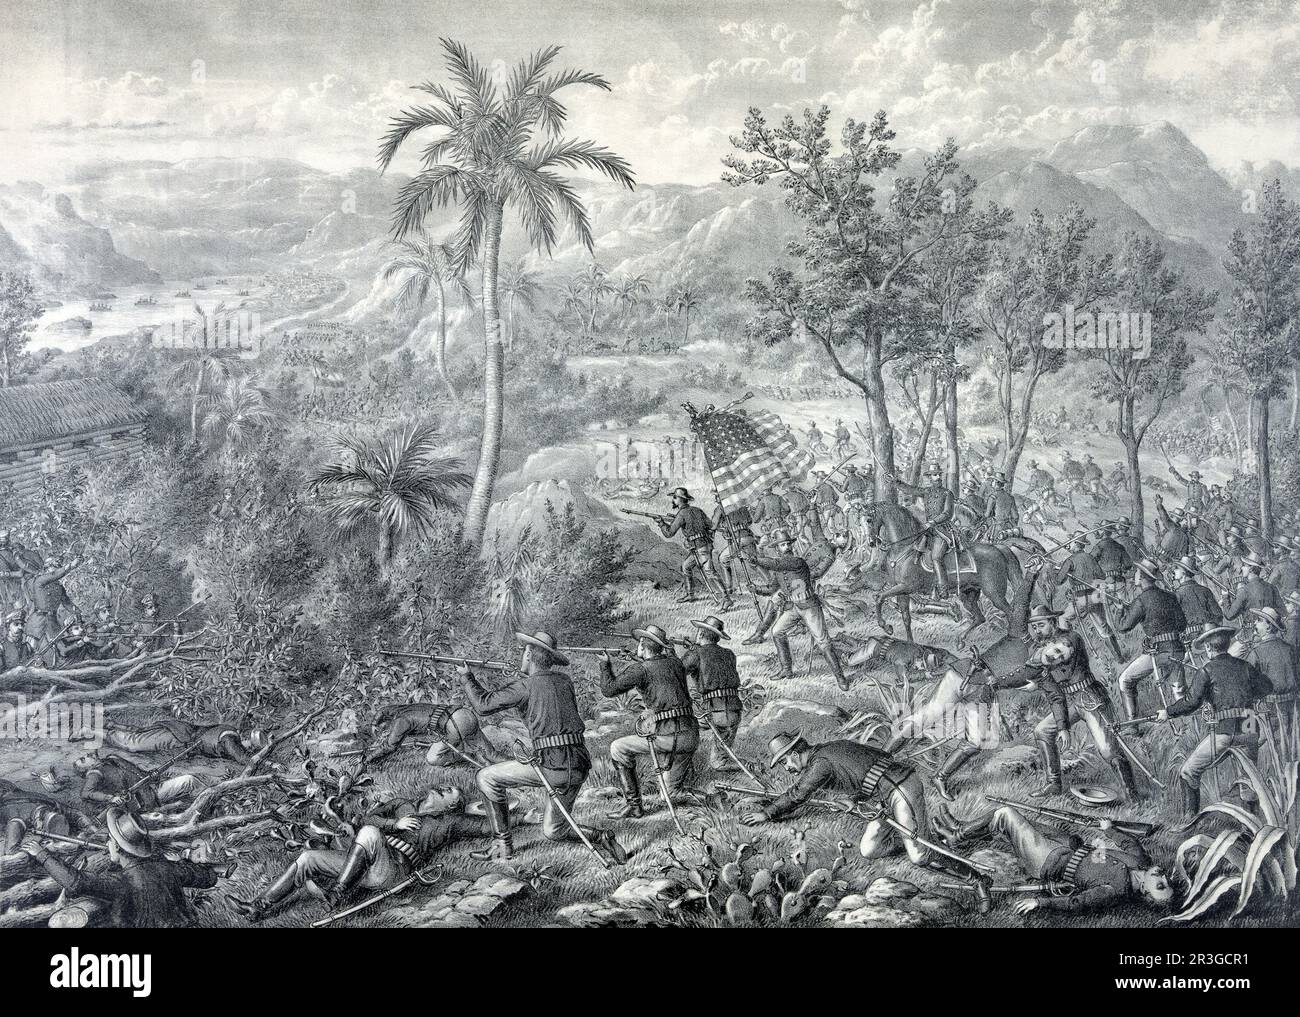 Schlacht von La Quasina, in der Nähe von Santiago de Cuba während des spanischen Amerikanischen Krieges, 1898. Stockfoto